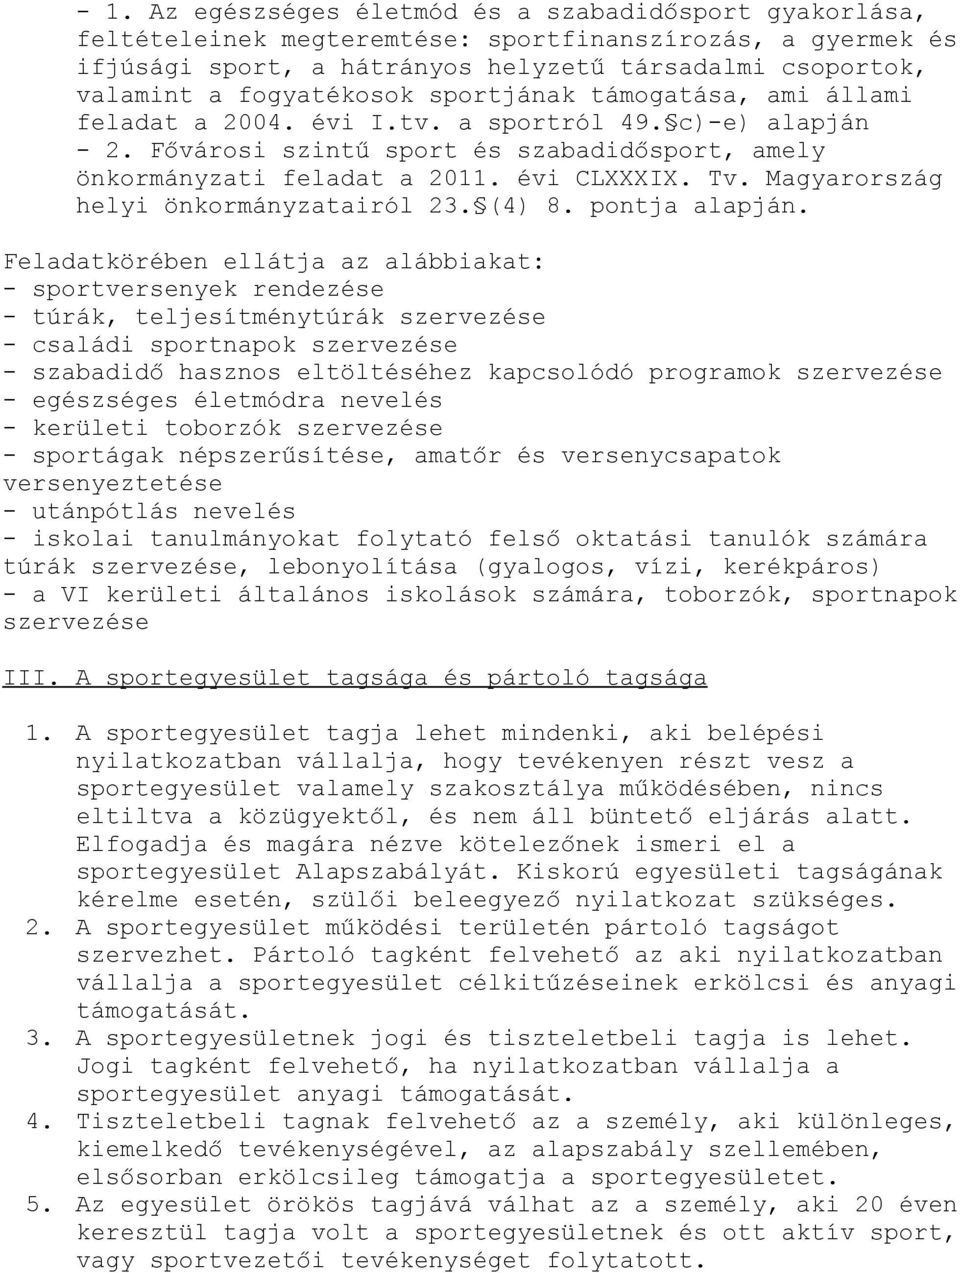 Magyarország helyi önkormányzatairól 23. (4) 8. pontja alapján.